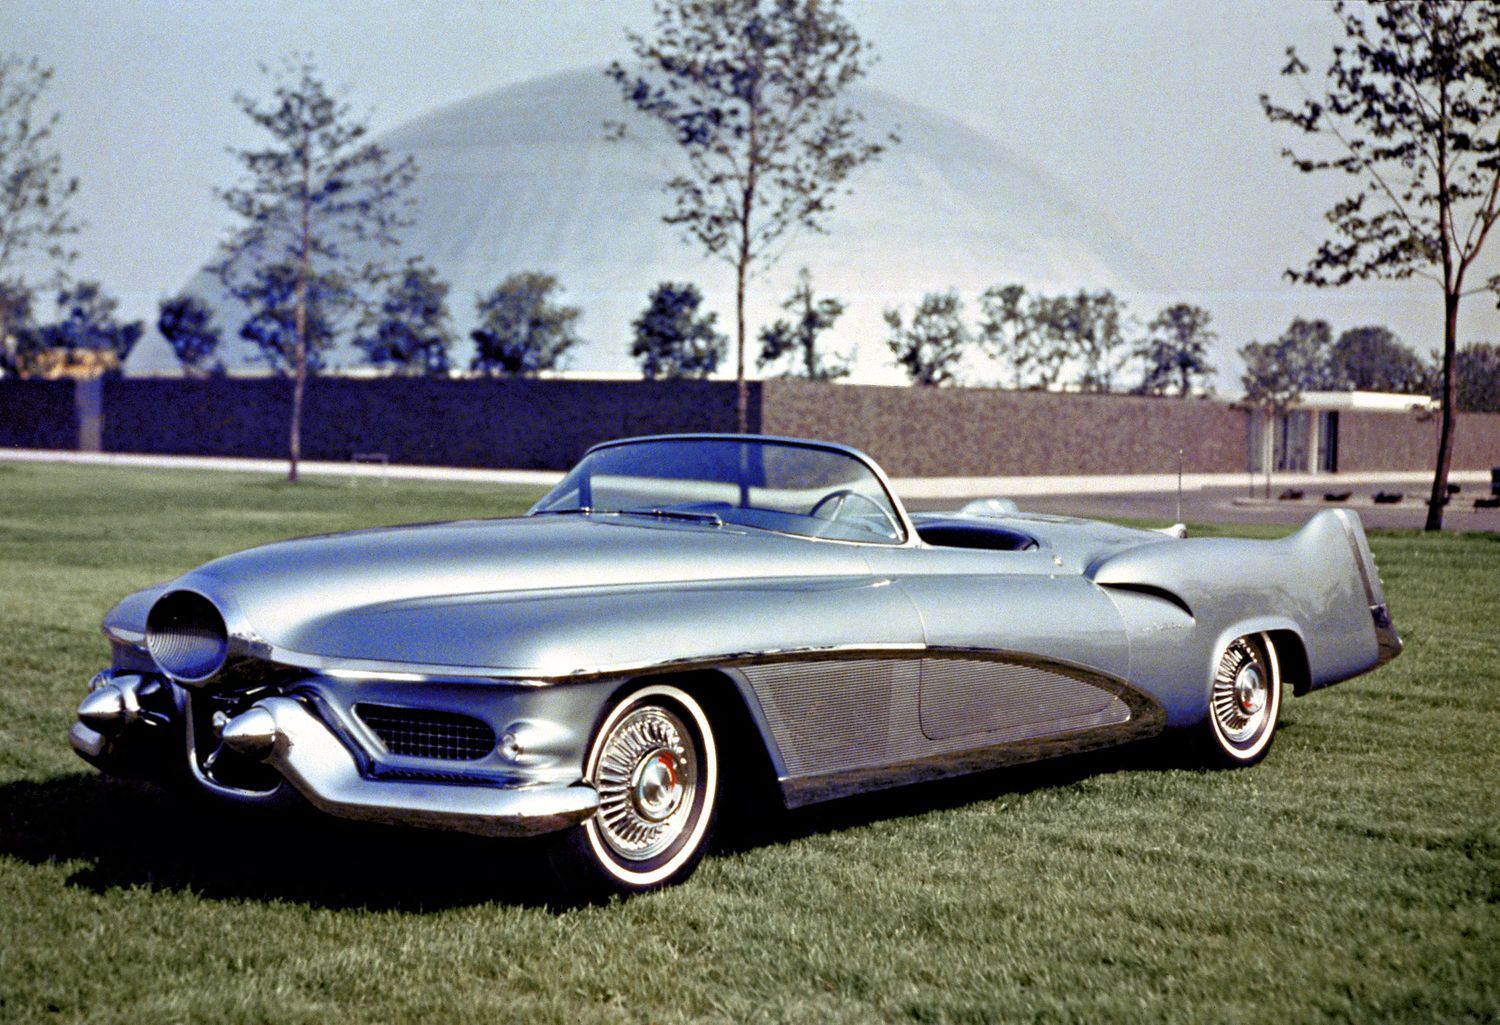 1951 GM LeSabre Concept Car parked on lawn